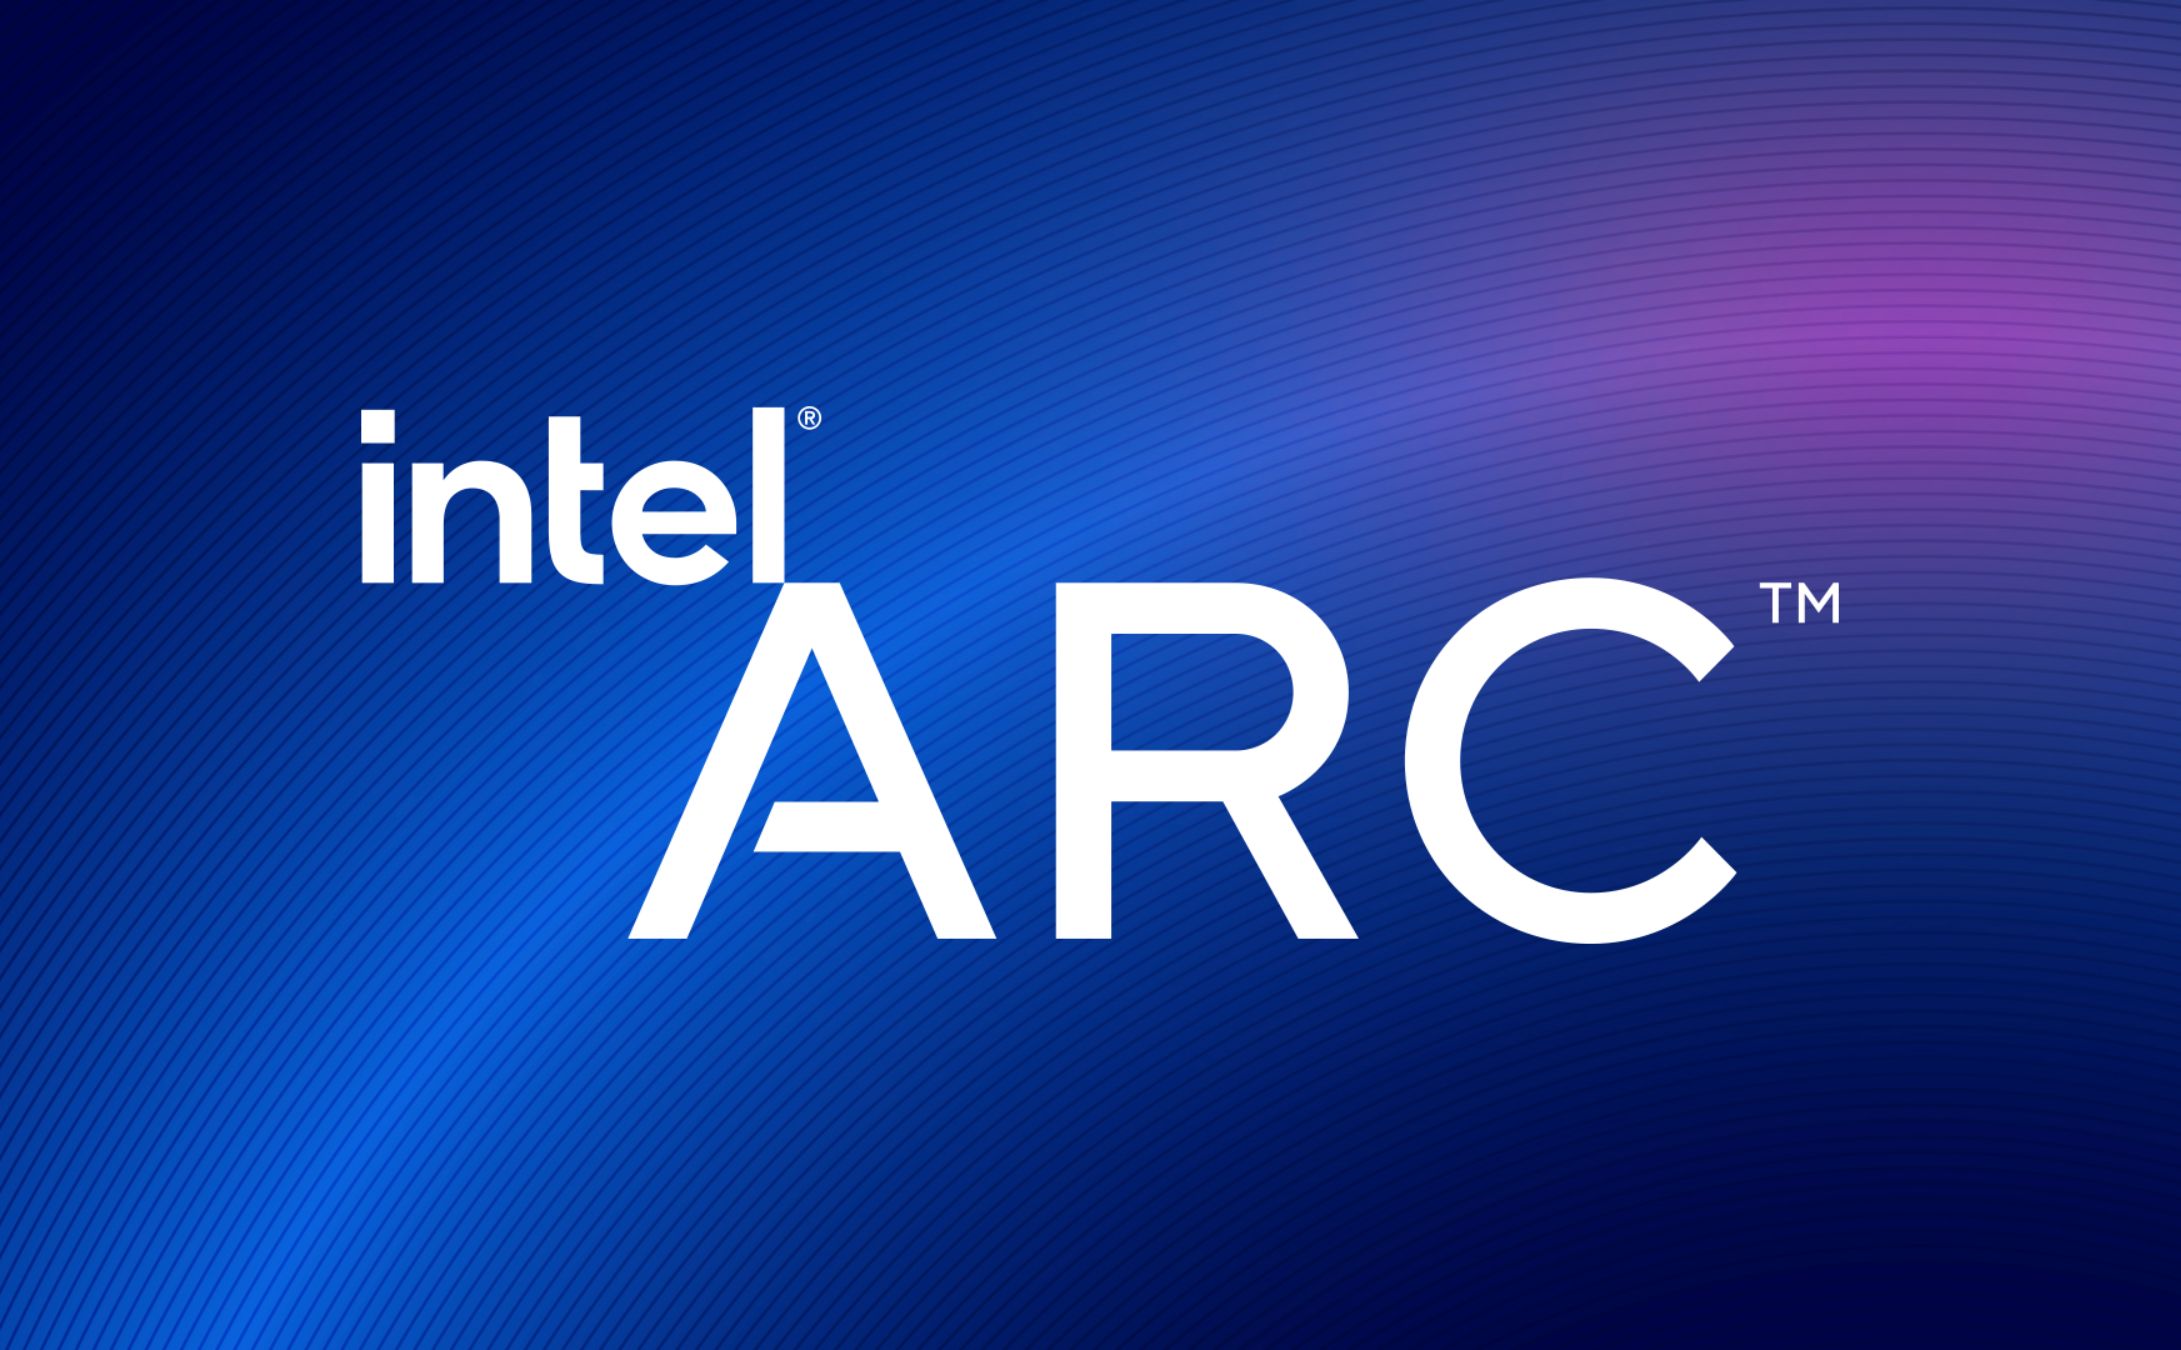 Card đồ họa dành cho game thủ đầu tiên của Intel sẽ có tên Intel ARC